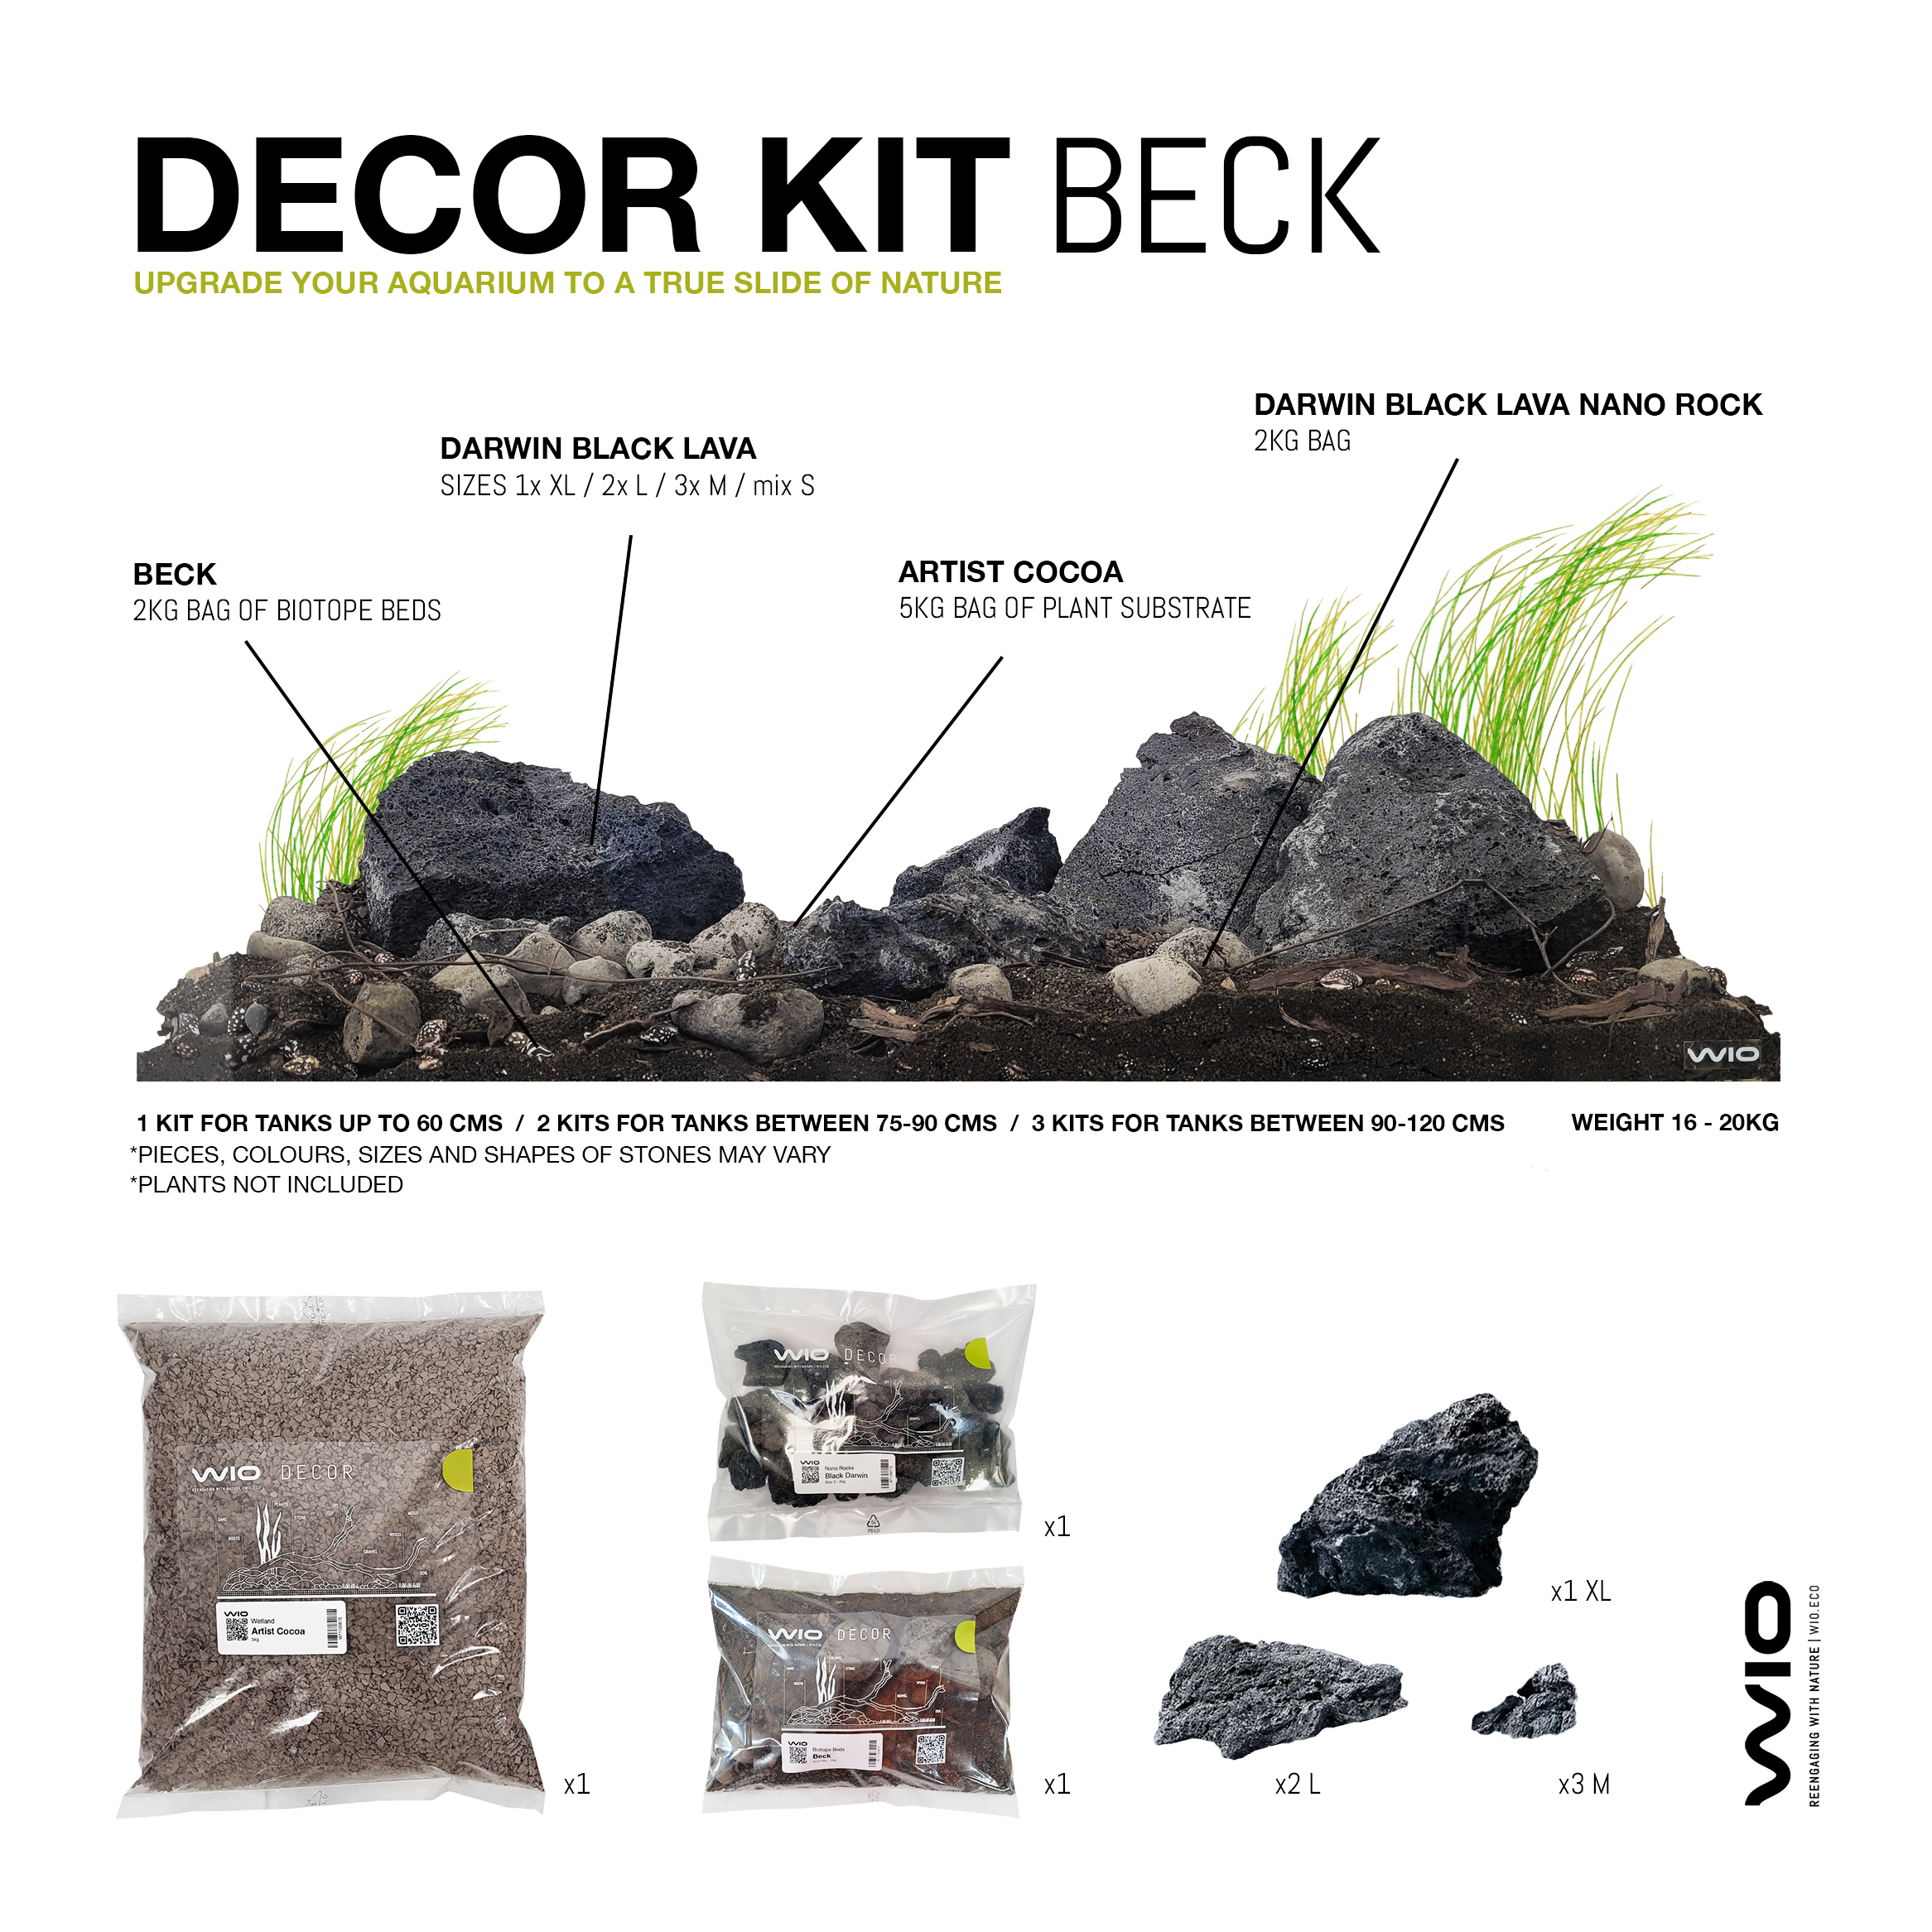 Kit complet cu substrat si pietre pentru decorul acvariului, Wio, Beck Decor Kit, 20 kg